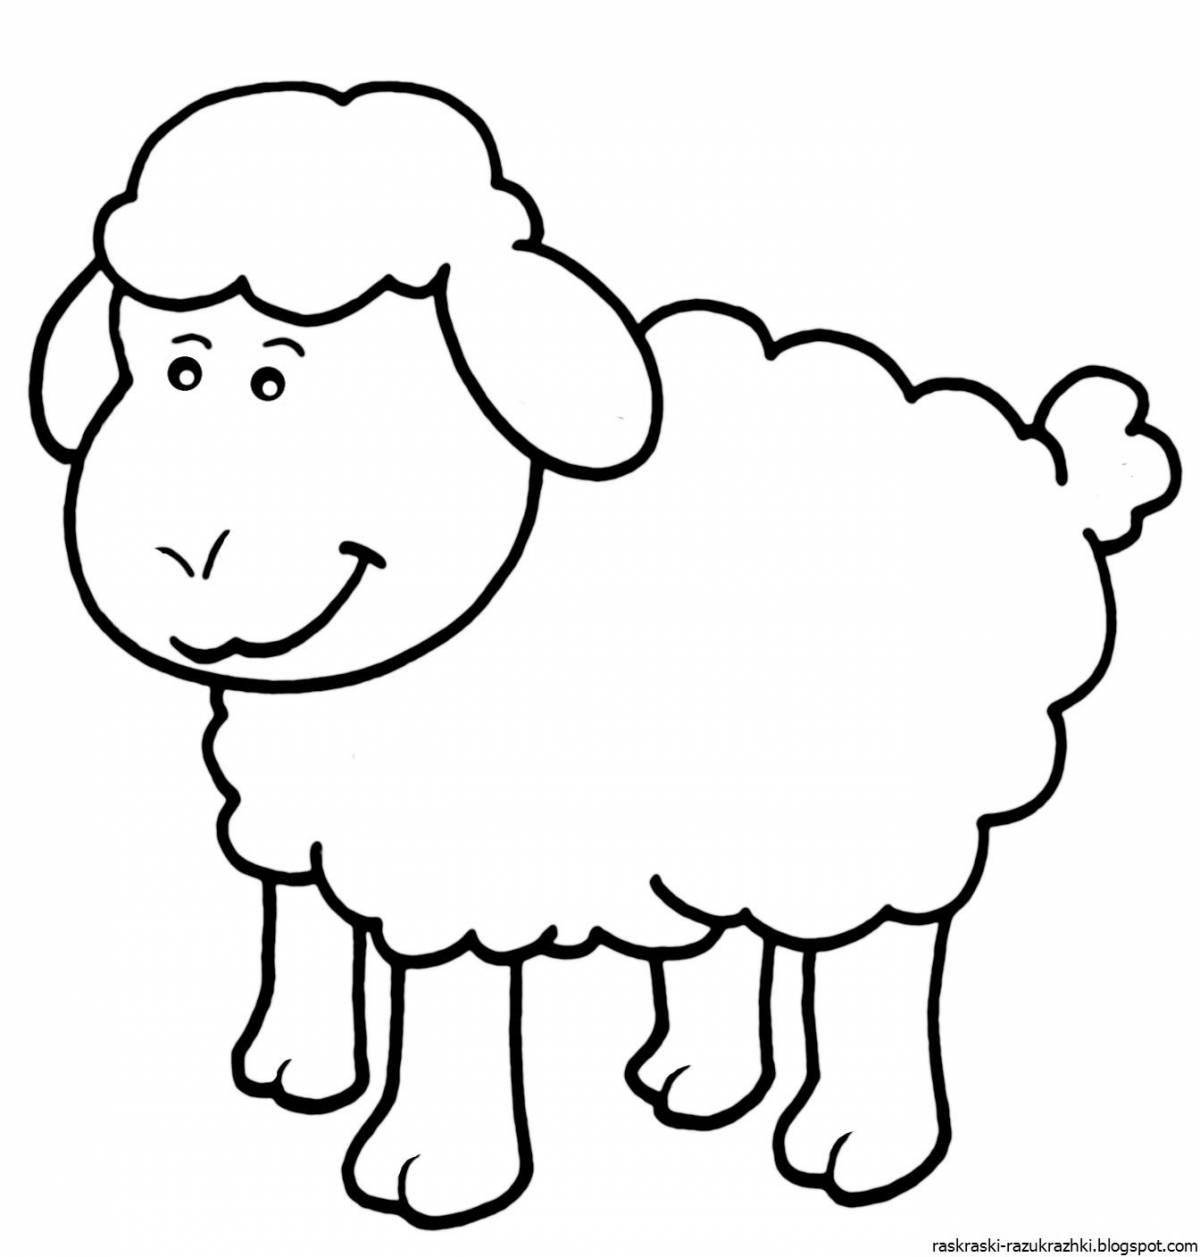 A funny lamb coloring book